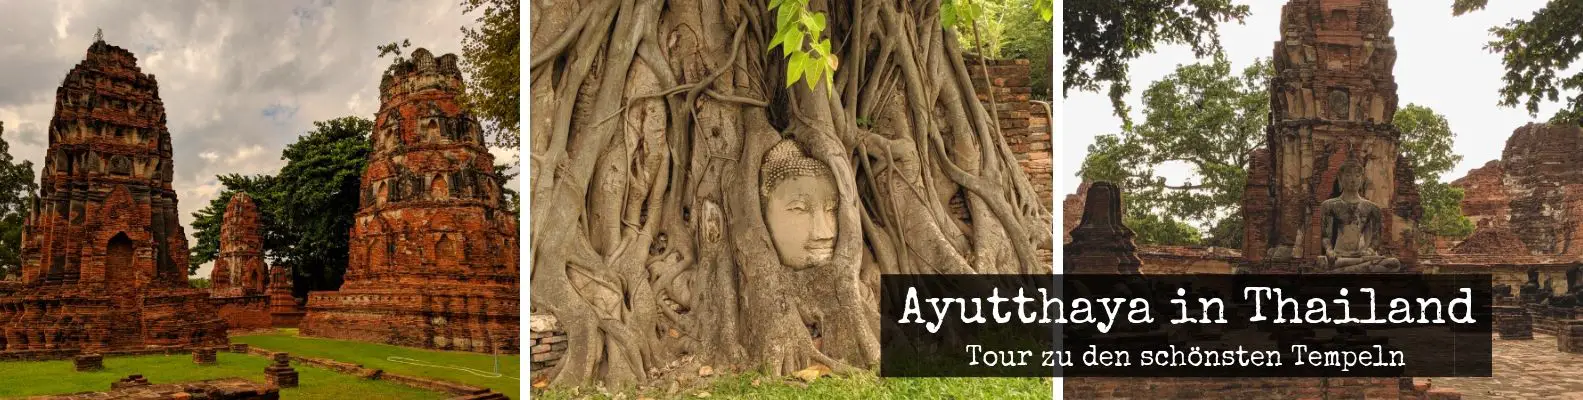 Ayutthaya Sehenswürdigkeiten - Eine Tour ab Bangkok